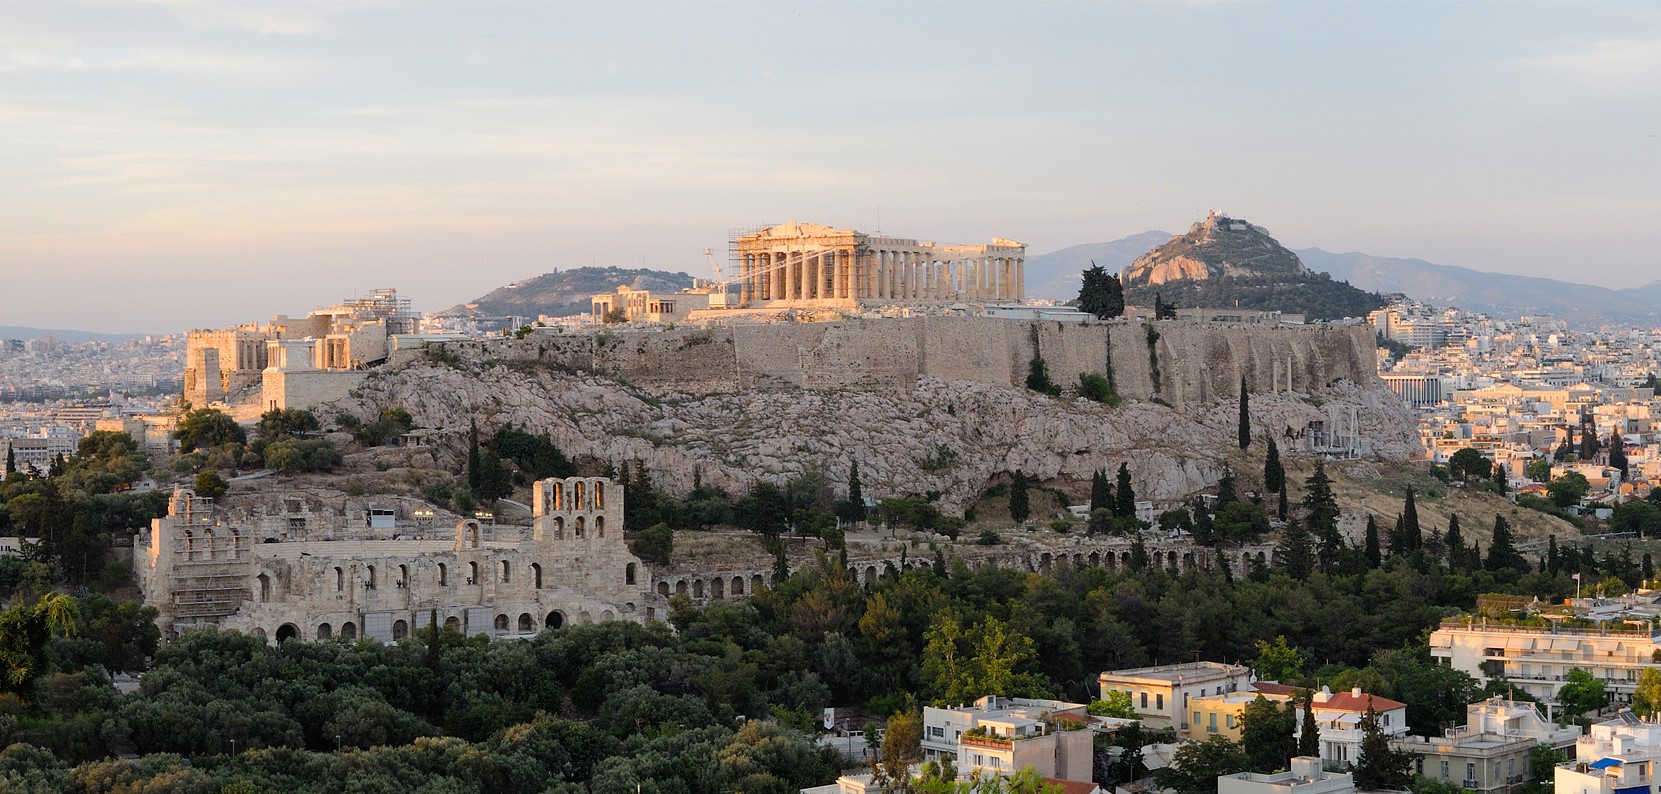 Athens Acropolis Wikimedia